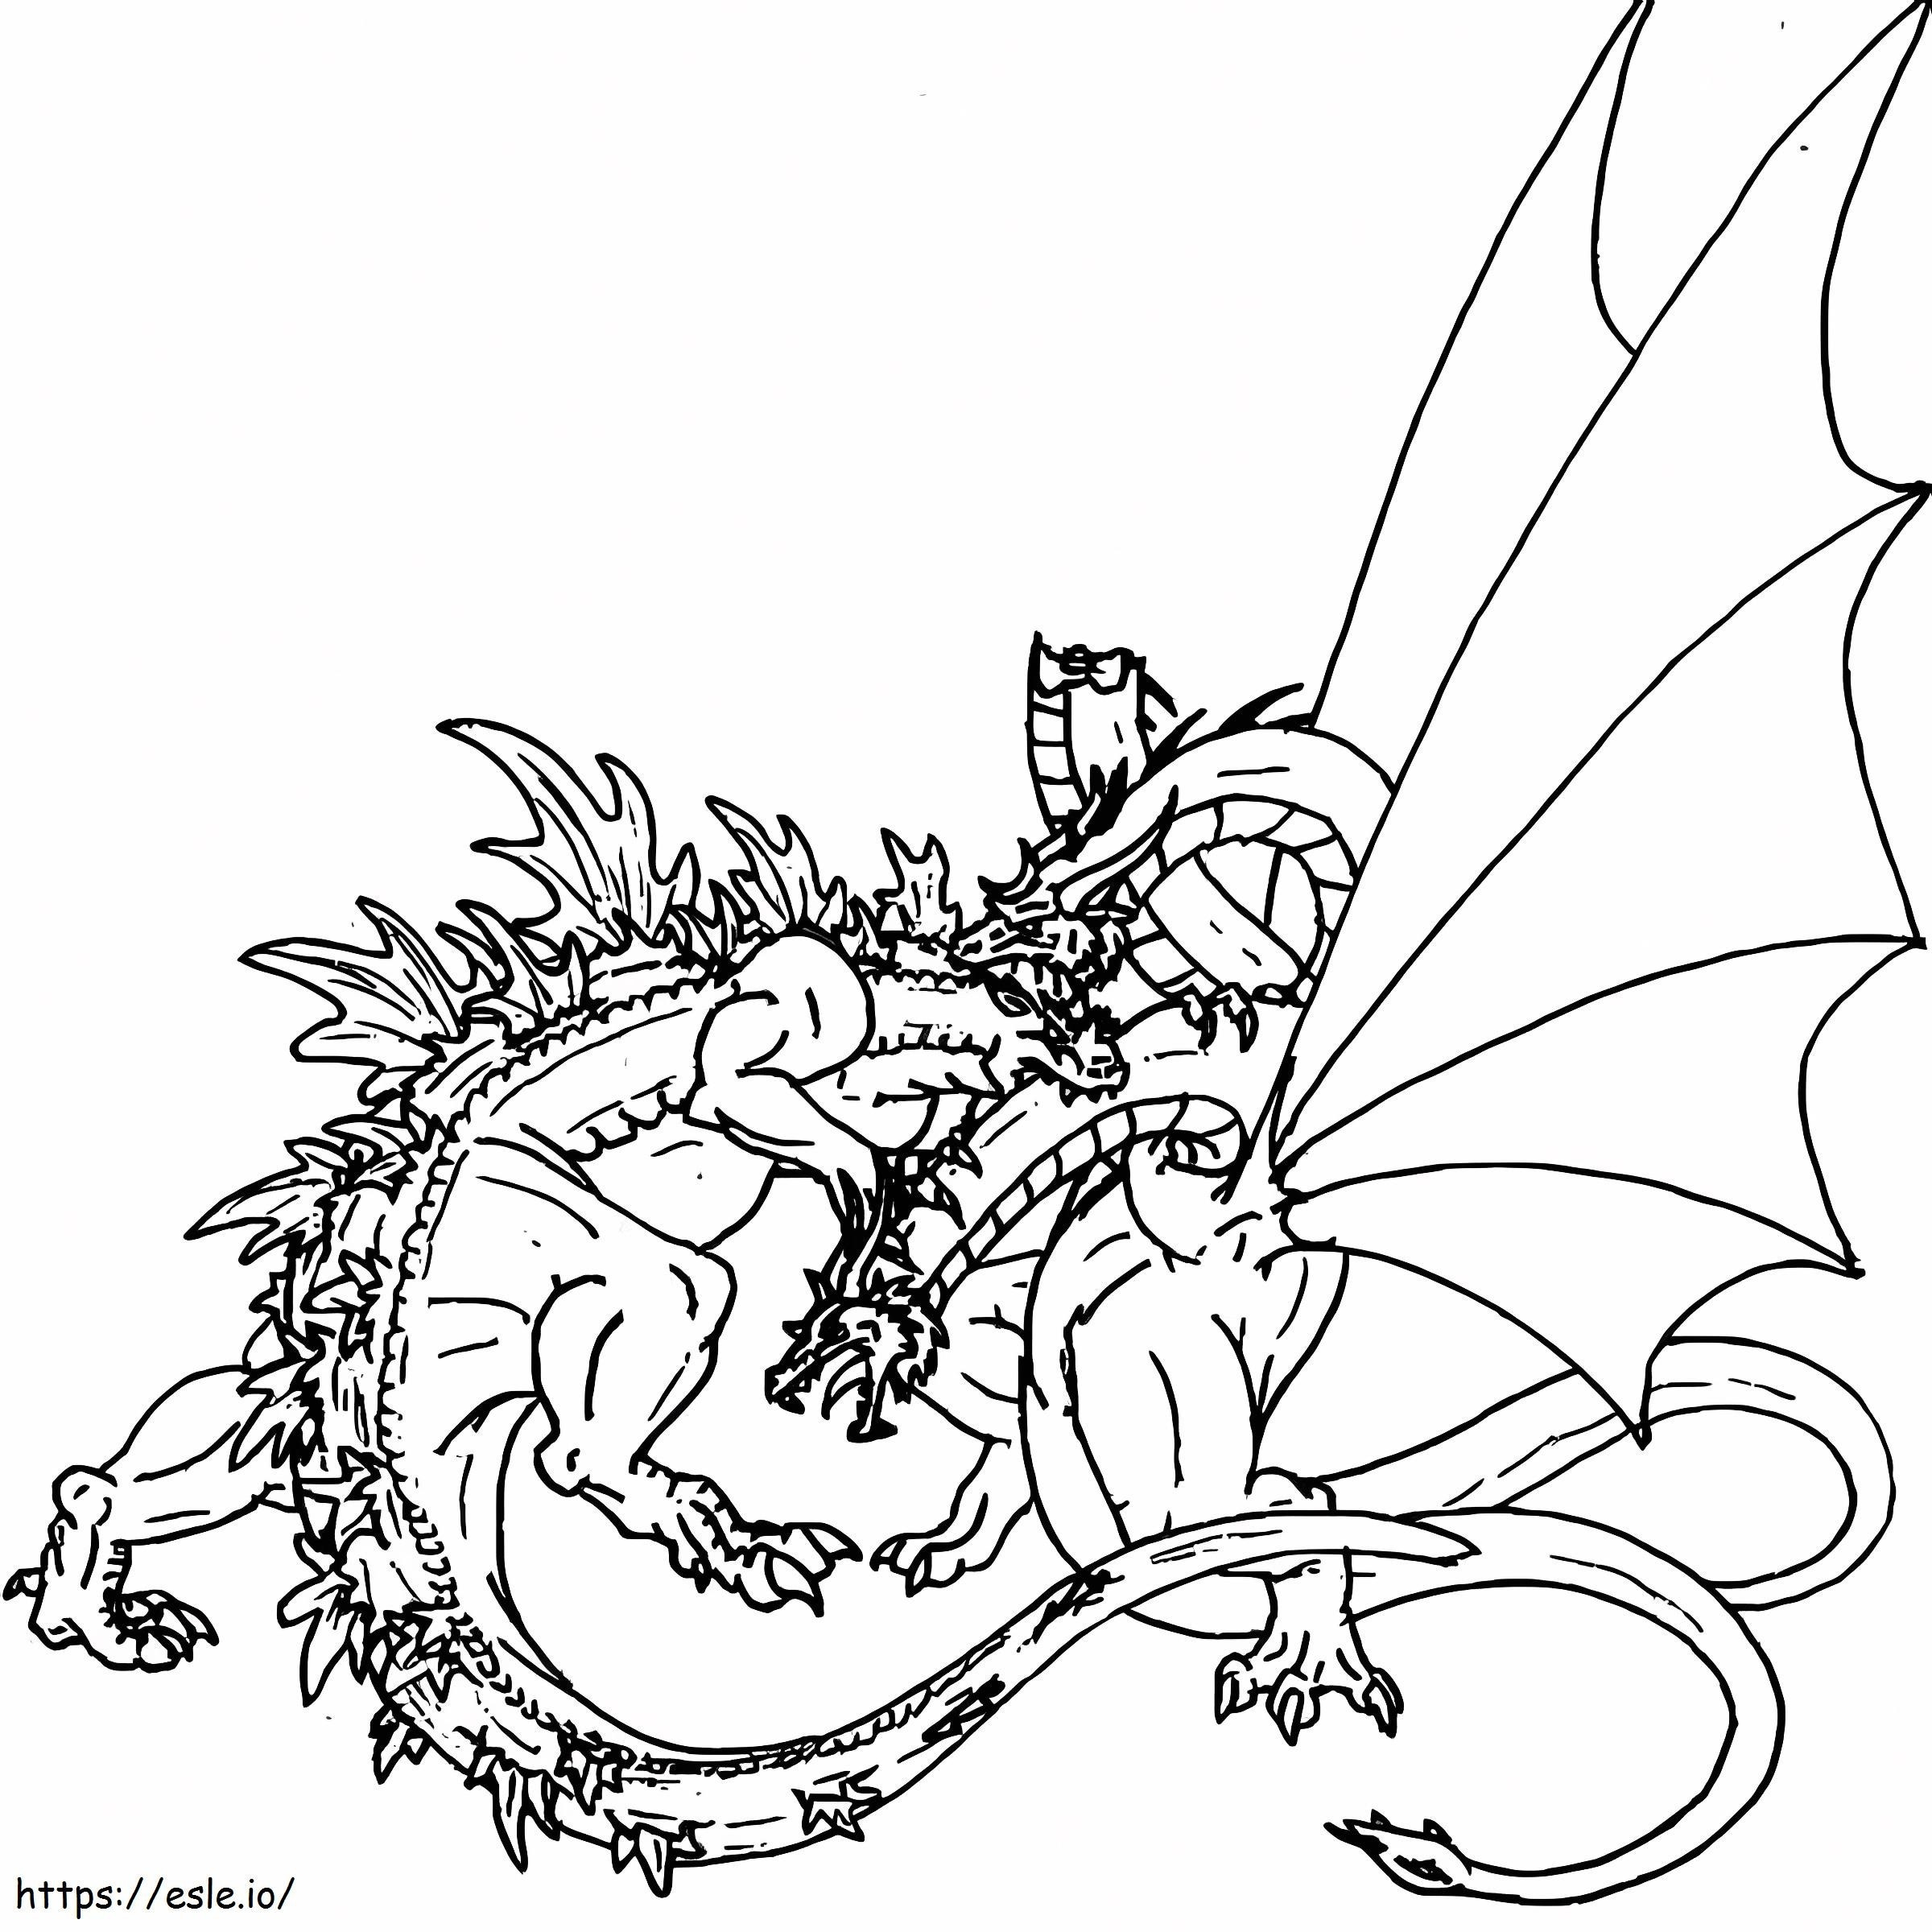 Godzilla Vs Dragon coloring page